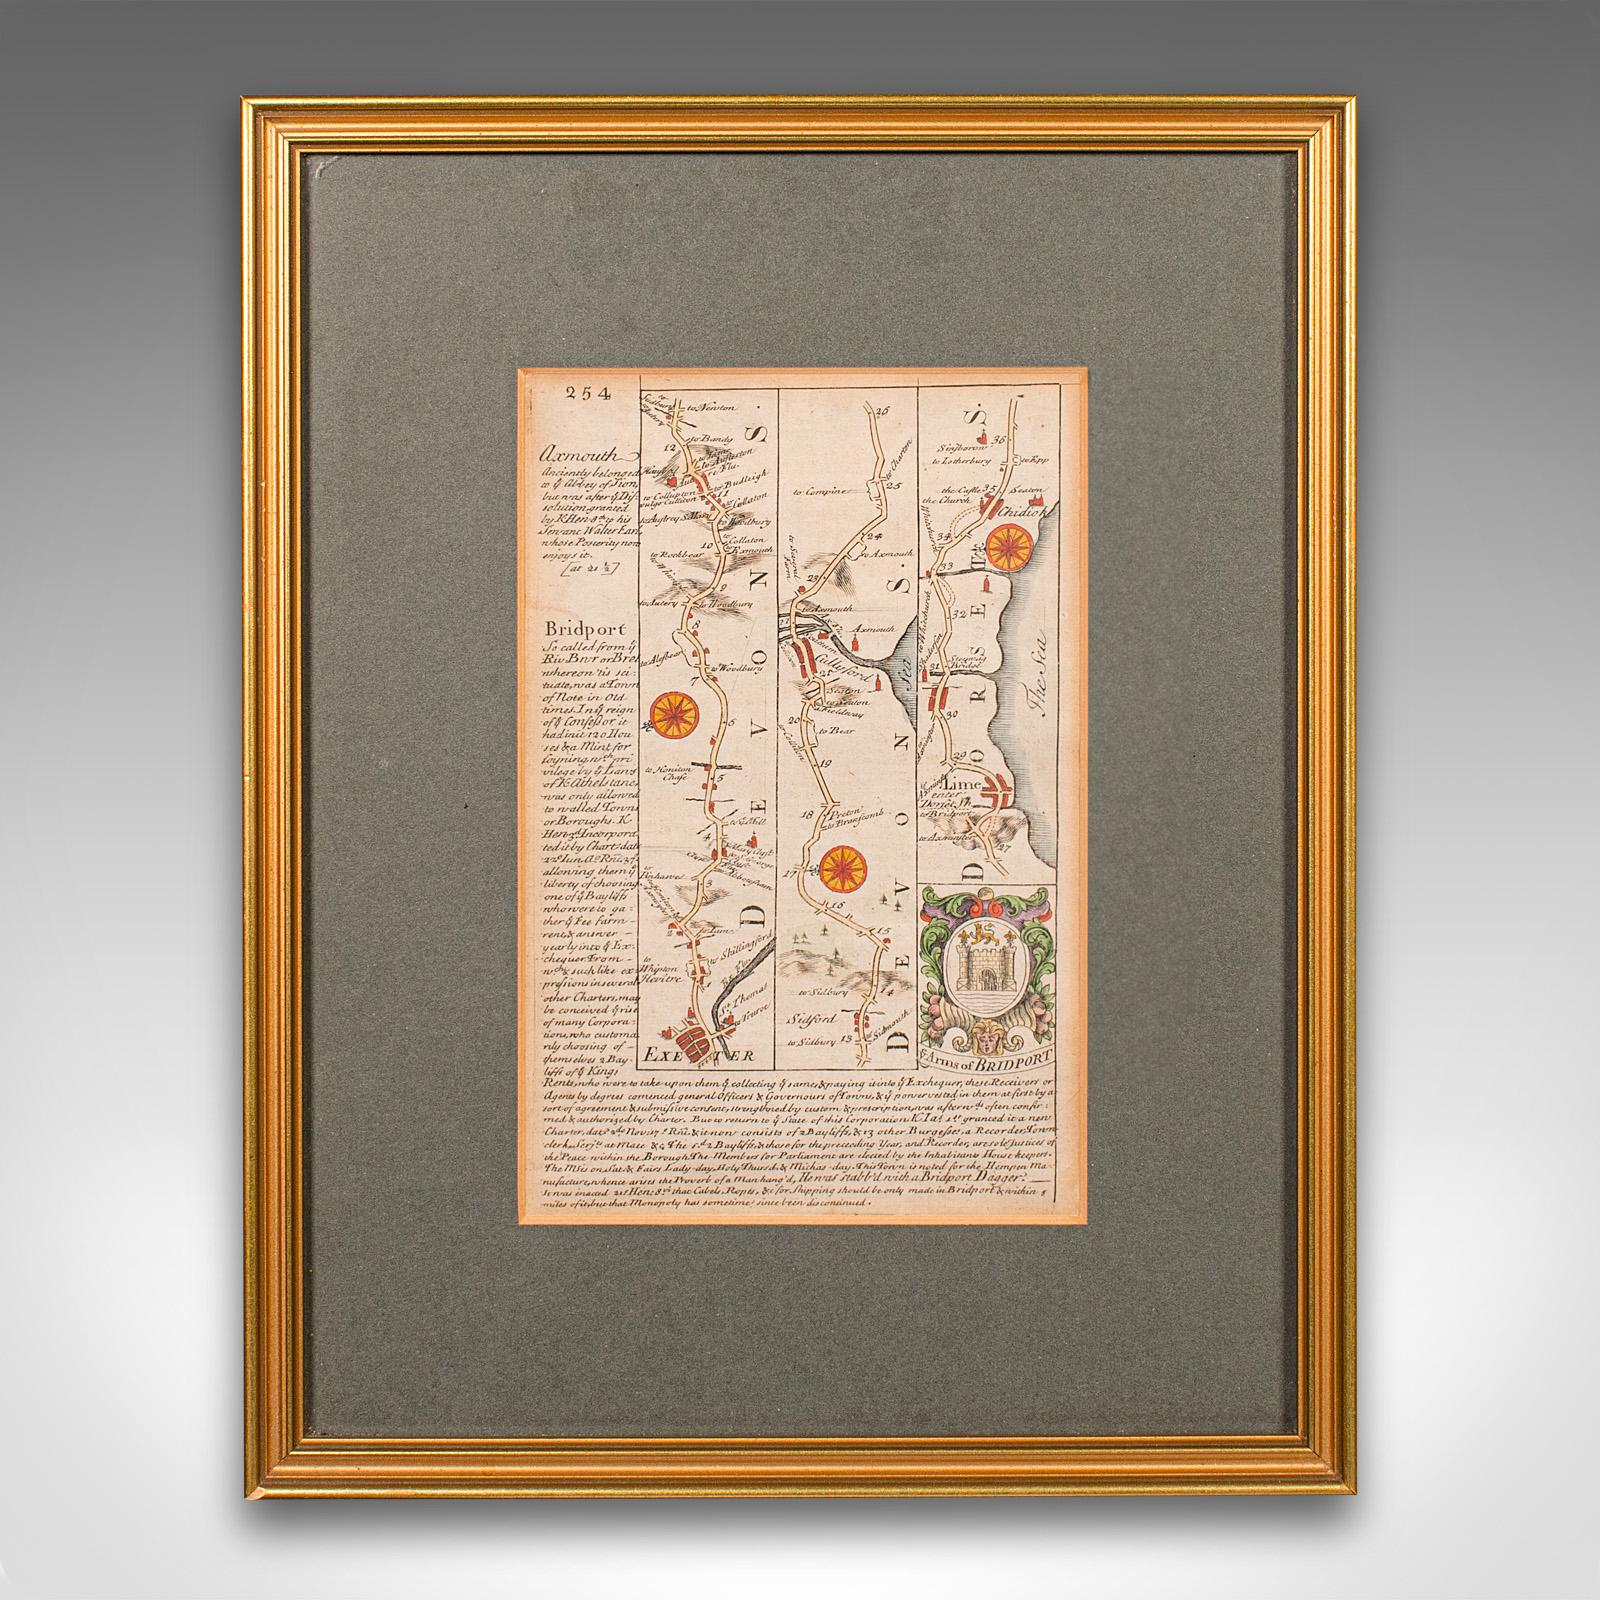 Dies ist eine antike Straßenkarte von East Devon. Eine englische, gerahmte Lithografie von regionalem Interesse aus dem frühen 18. Jahrhundert oder später.

Faszinierende Autobahnkartografie des 18. Jahrhunderts von Exeter nach Bridport
Zeigt eine